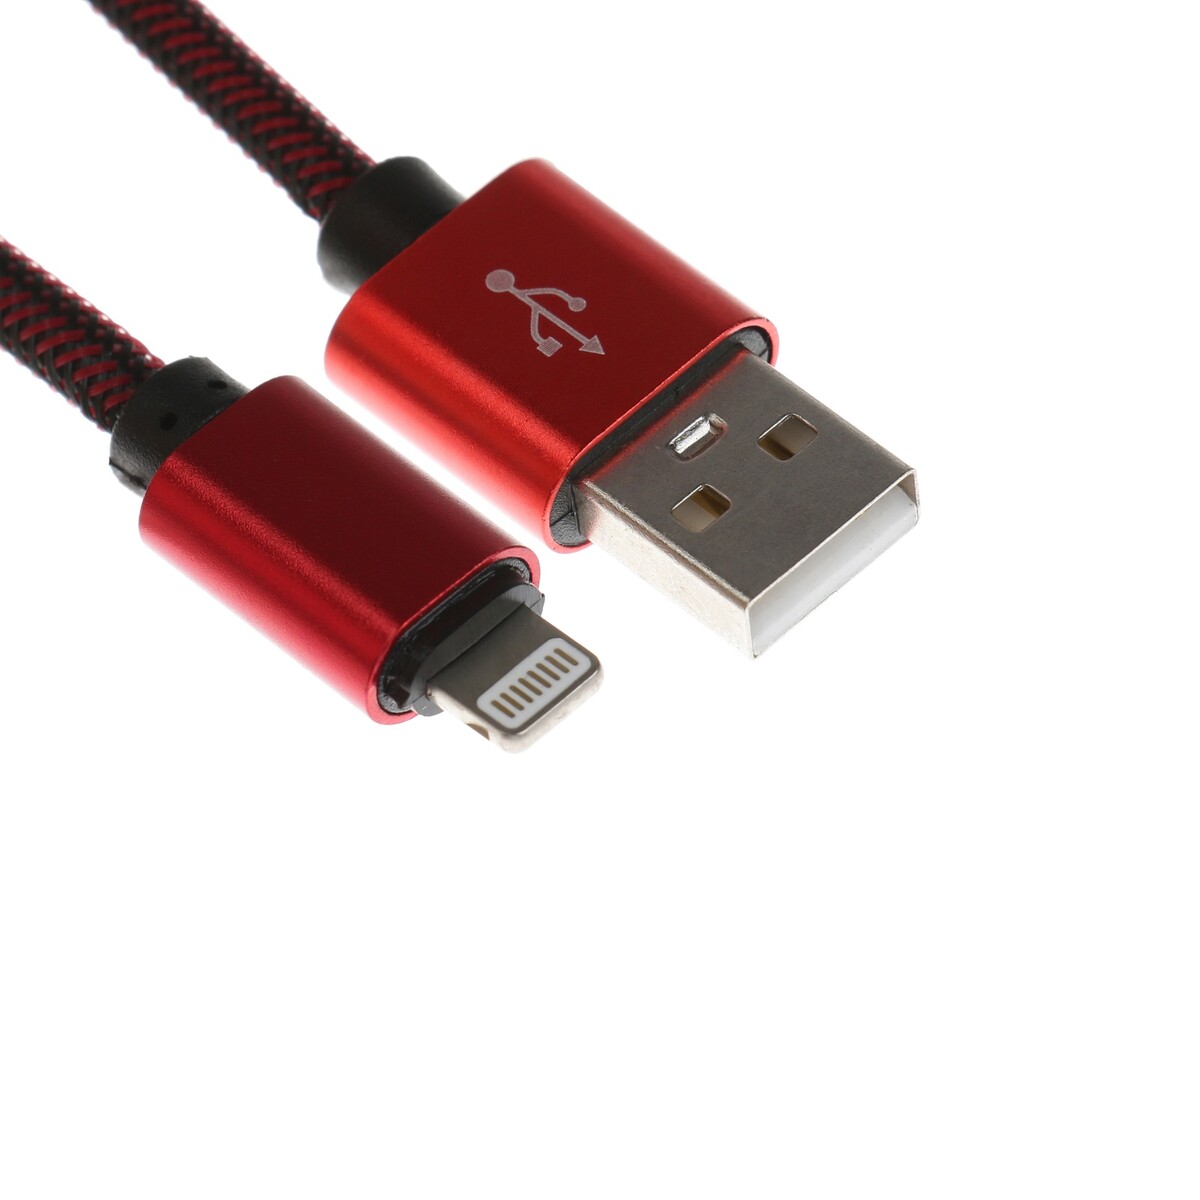 Кабель lightning - usb, 2.1 а, оплетка нейлон, 2 метра, красный дата кабель mobility type c lightning 3а тканевая оплетка красный ут000024530